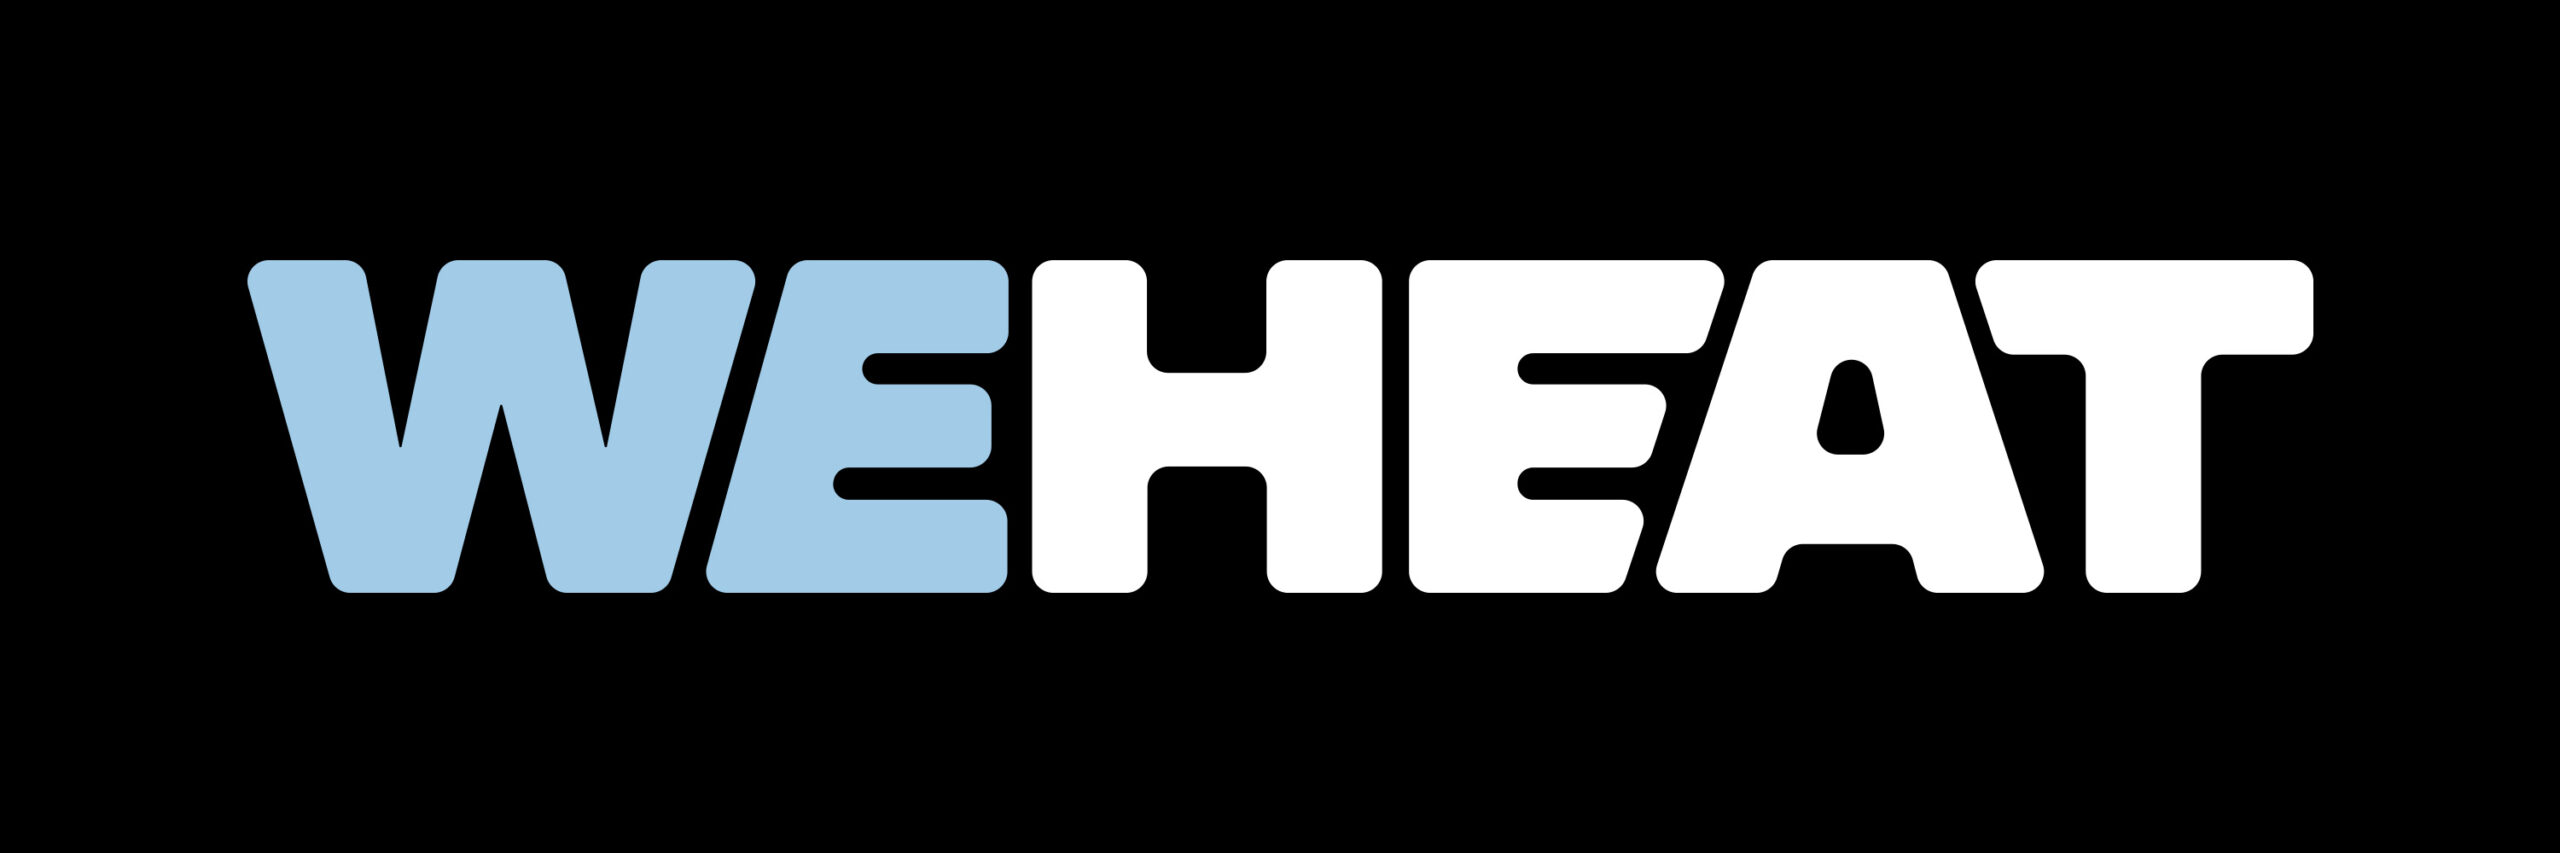 Weheat-Logo-1-scaled